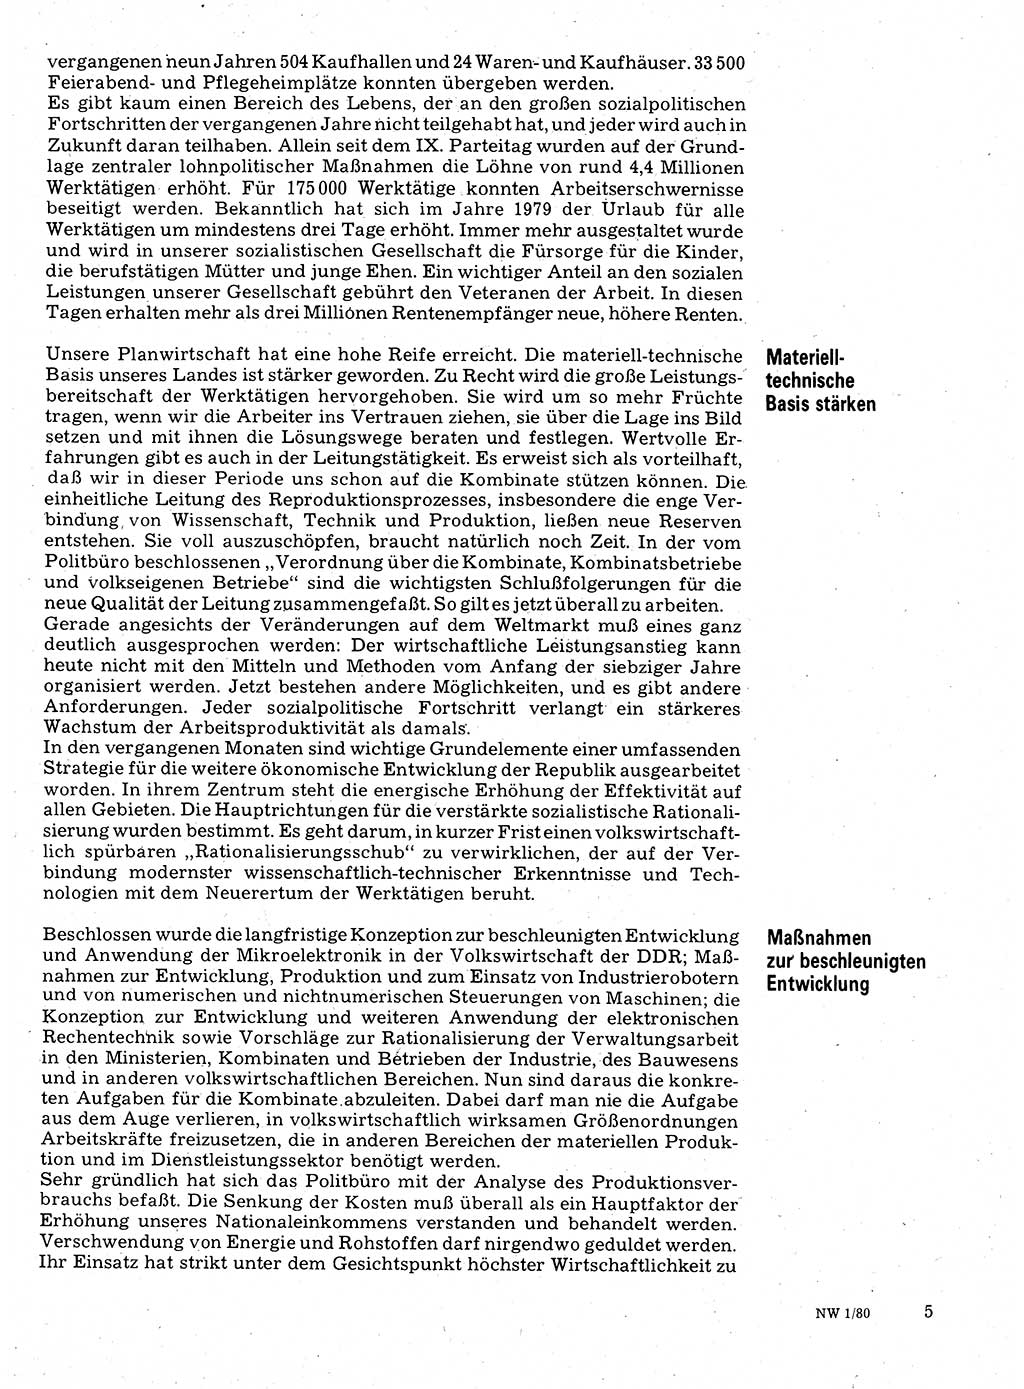 Neuer Weg (NW), Organ des Zentralkomitees (ZK) der SED (Sozialistische Einheitspartei Deutschlands) für Fragen des Parteilebens, 35. Jahrgang [Deutsche Demokratische Republik (DDR)] 1980, Seite 5 (NW ZK SED DDR 1980, S. 5)